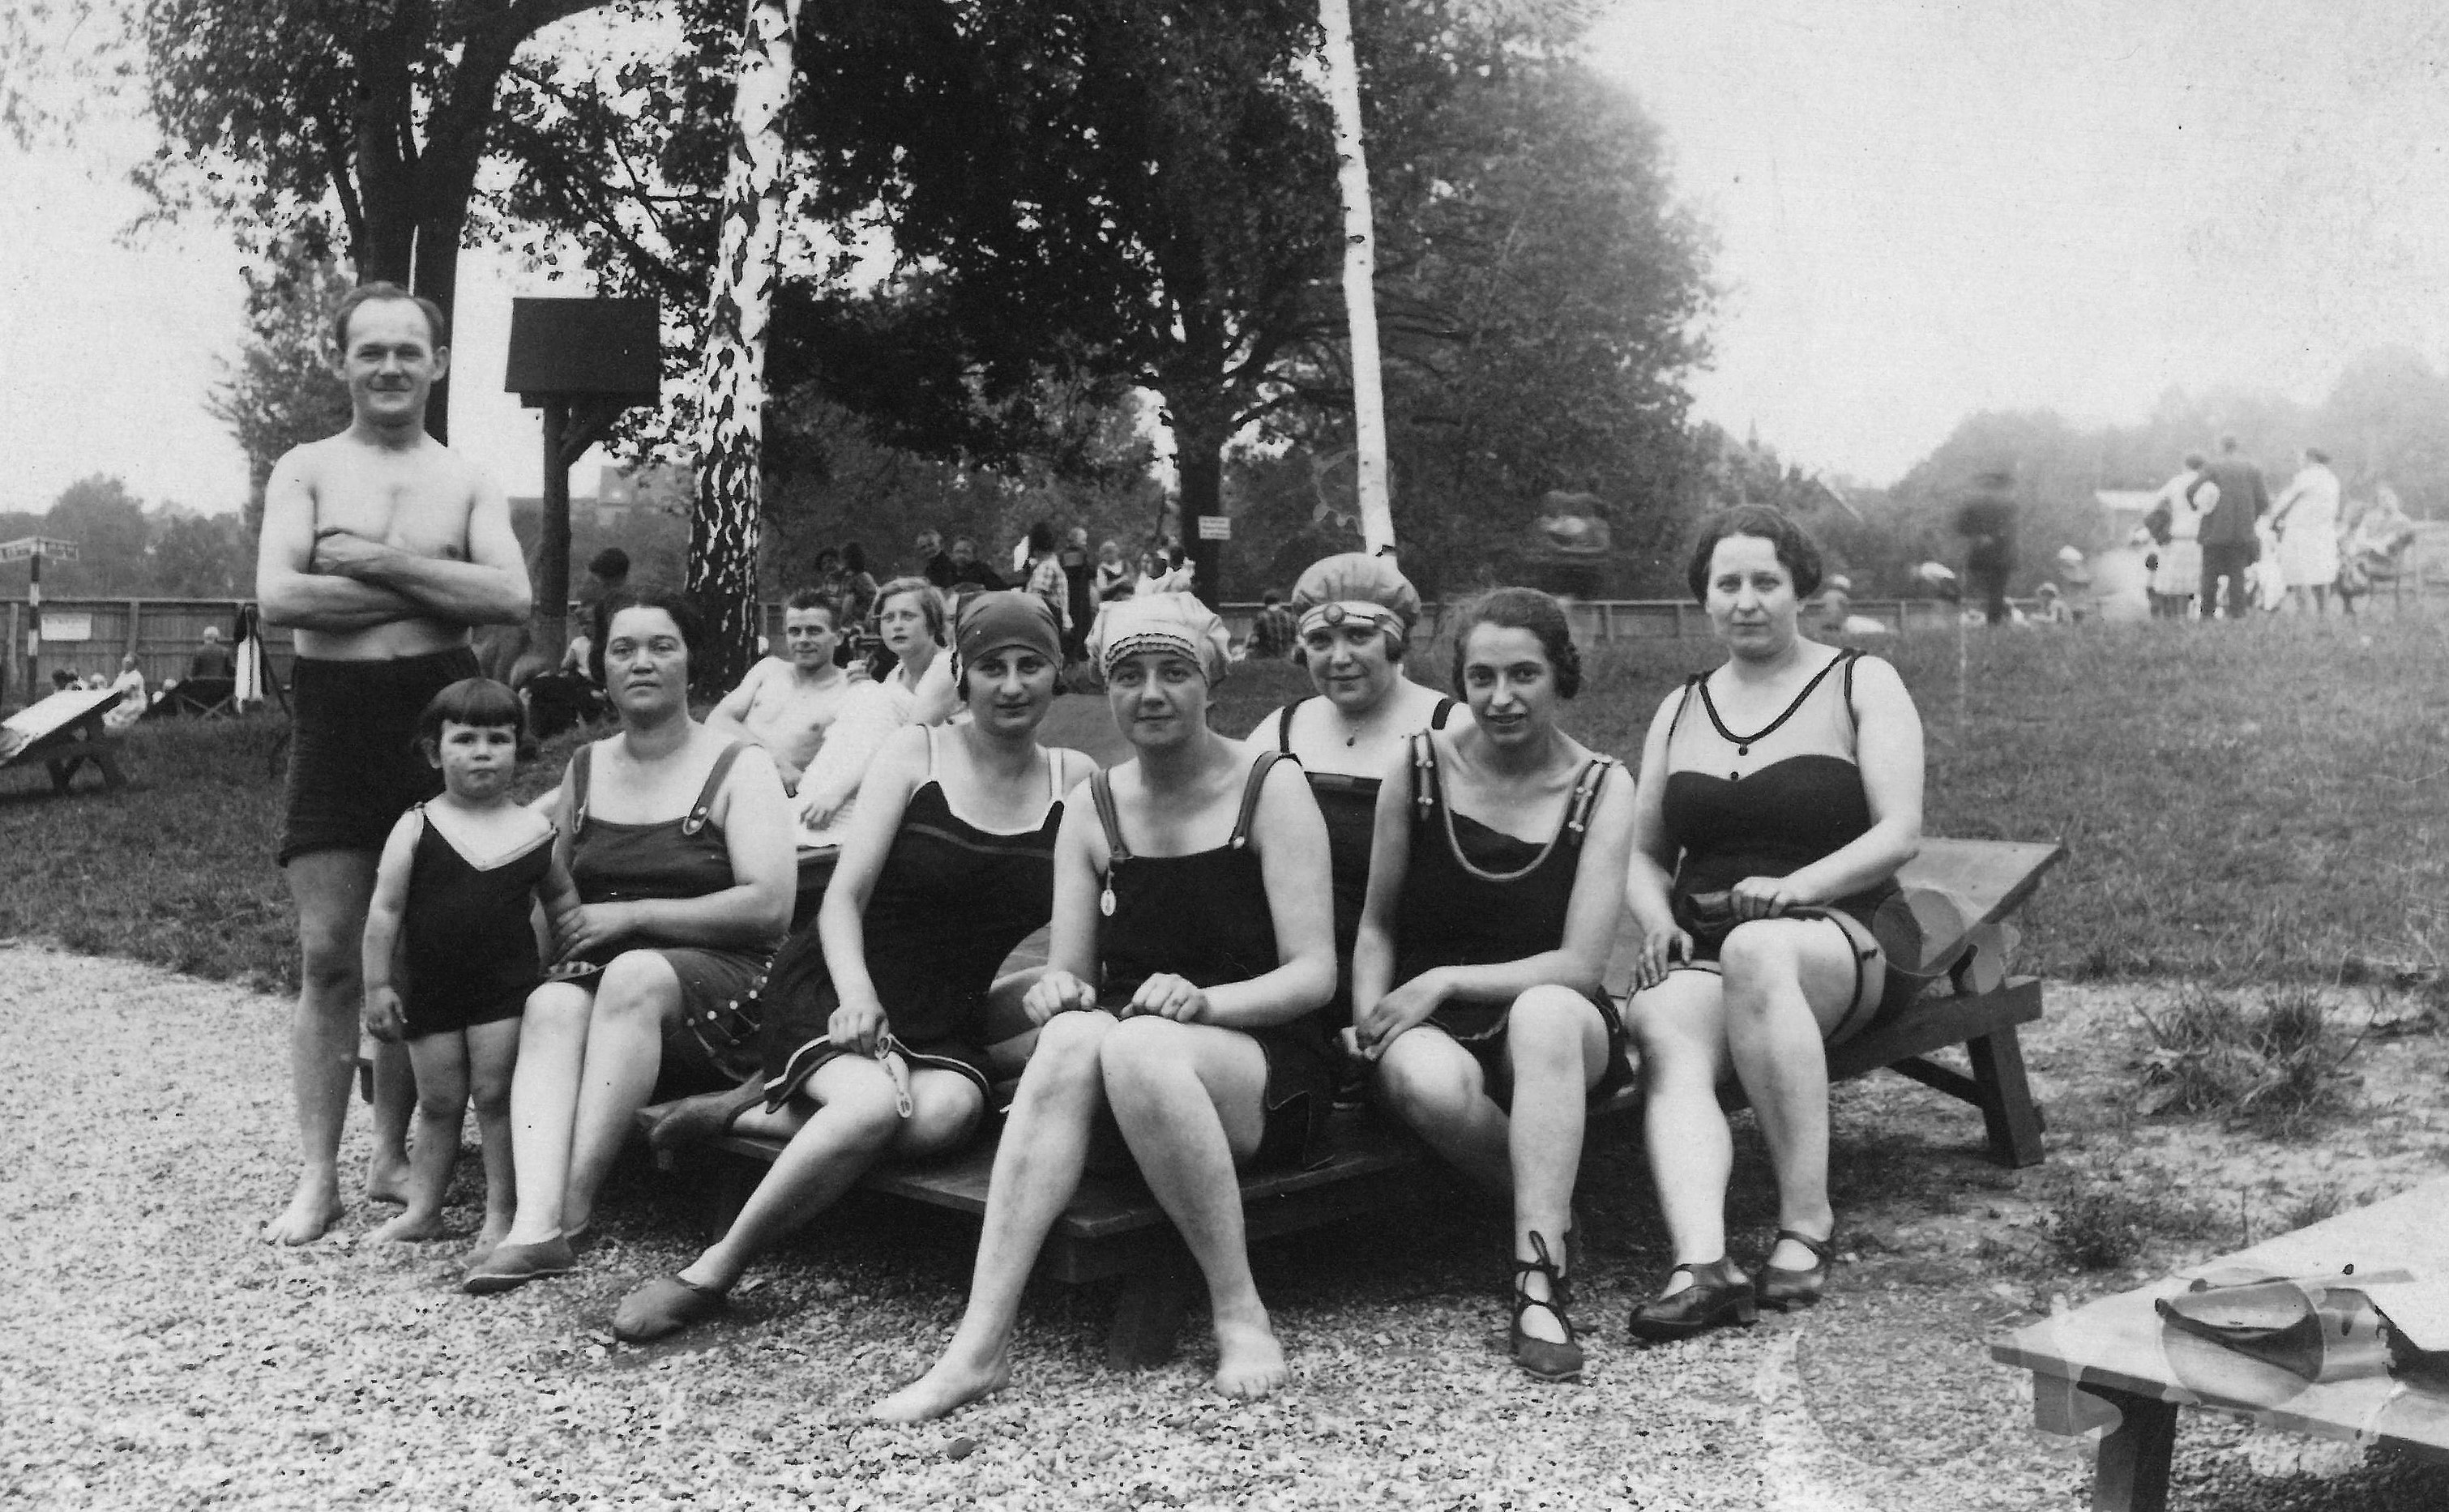 Historisches Gruppenbild von Frauen in altmodischen Badeanzügen